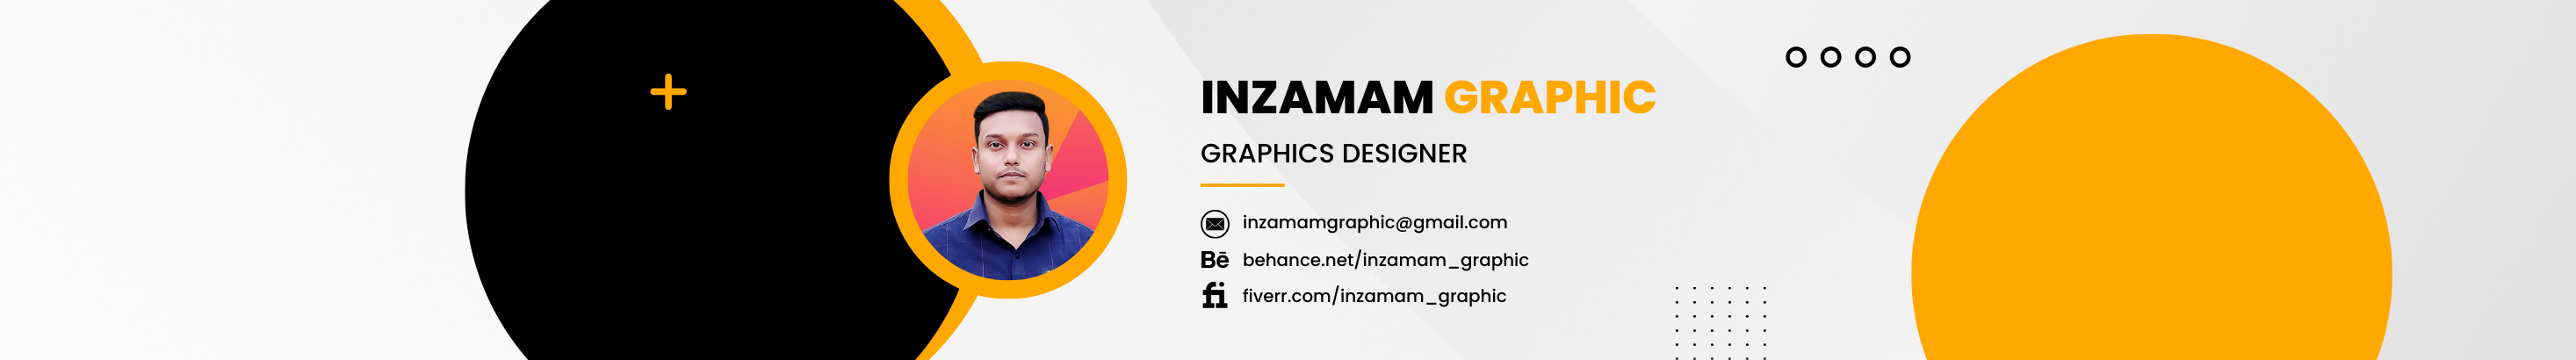 Inzamam Graphic profil başlığı